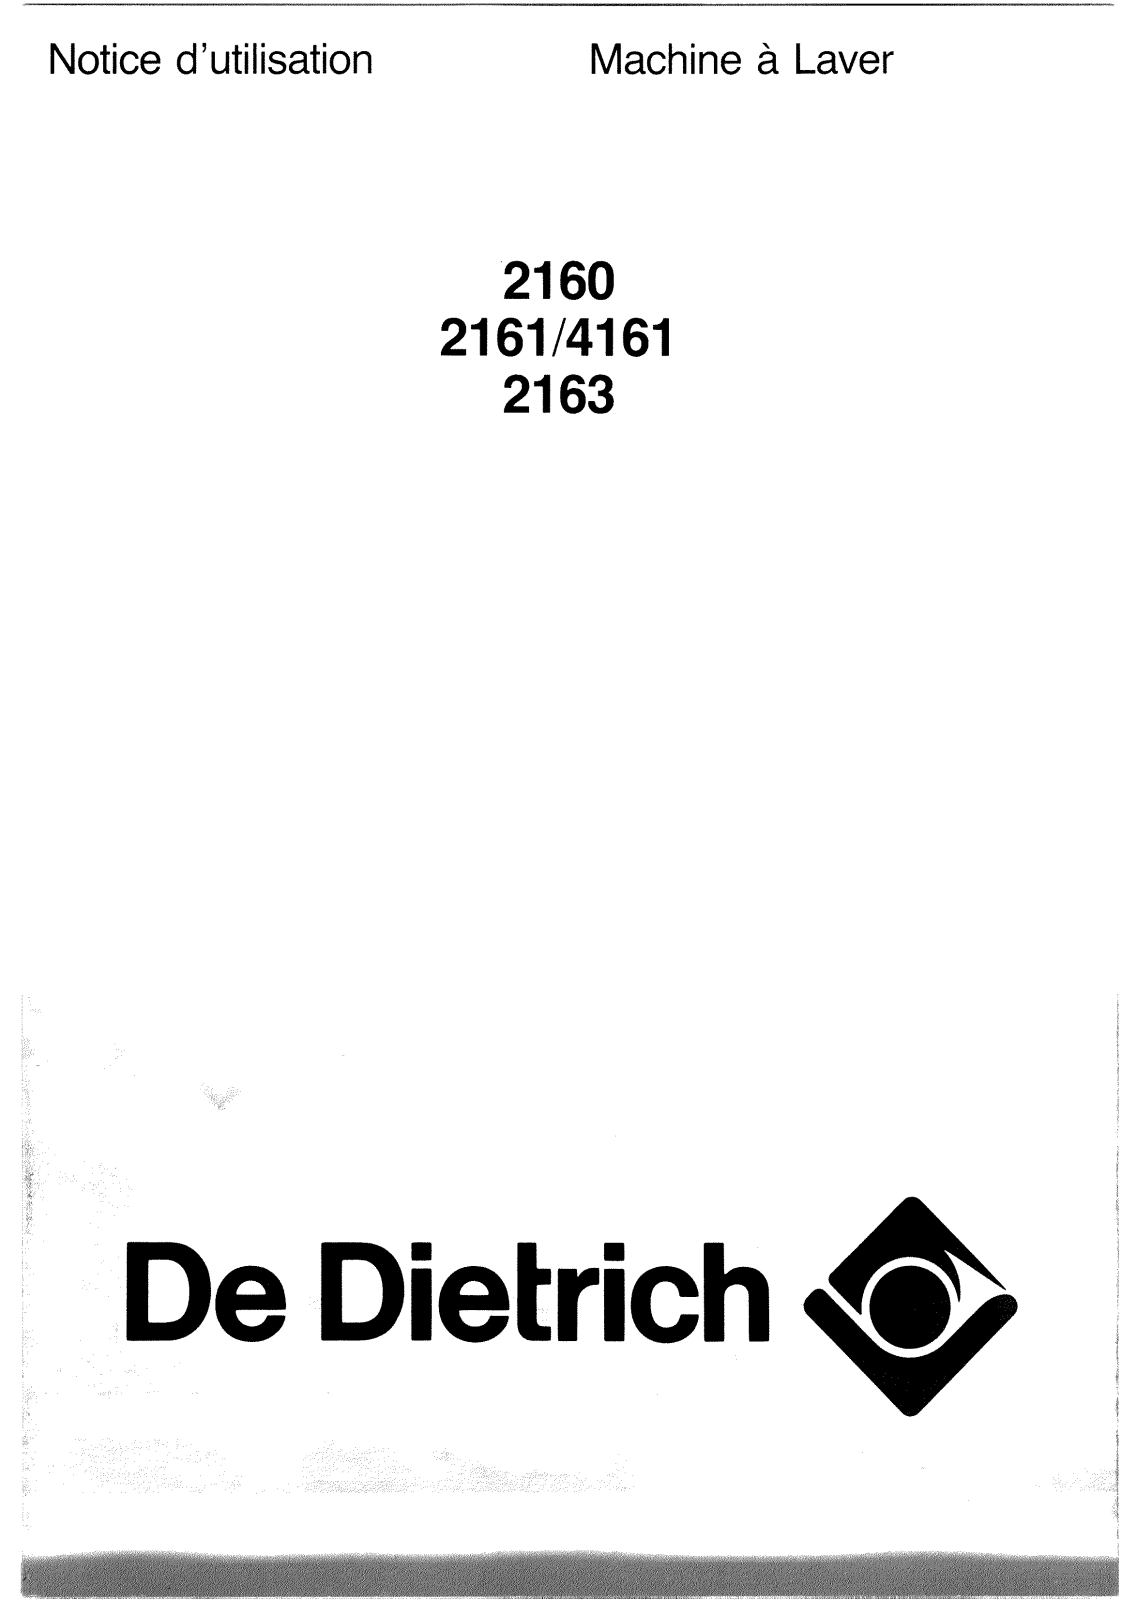 De dietrich 2160, 2163, 2161, 4161 User Manual